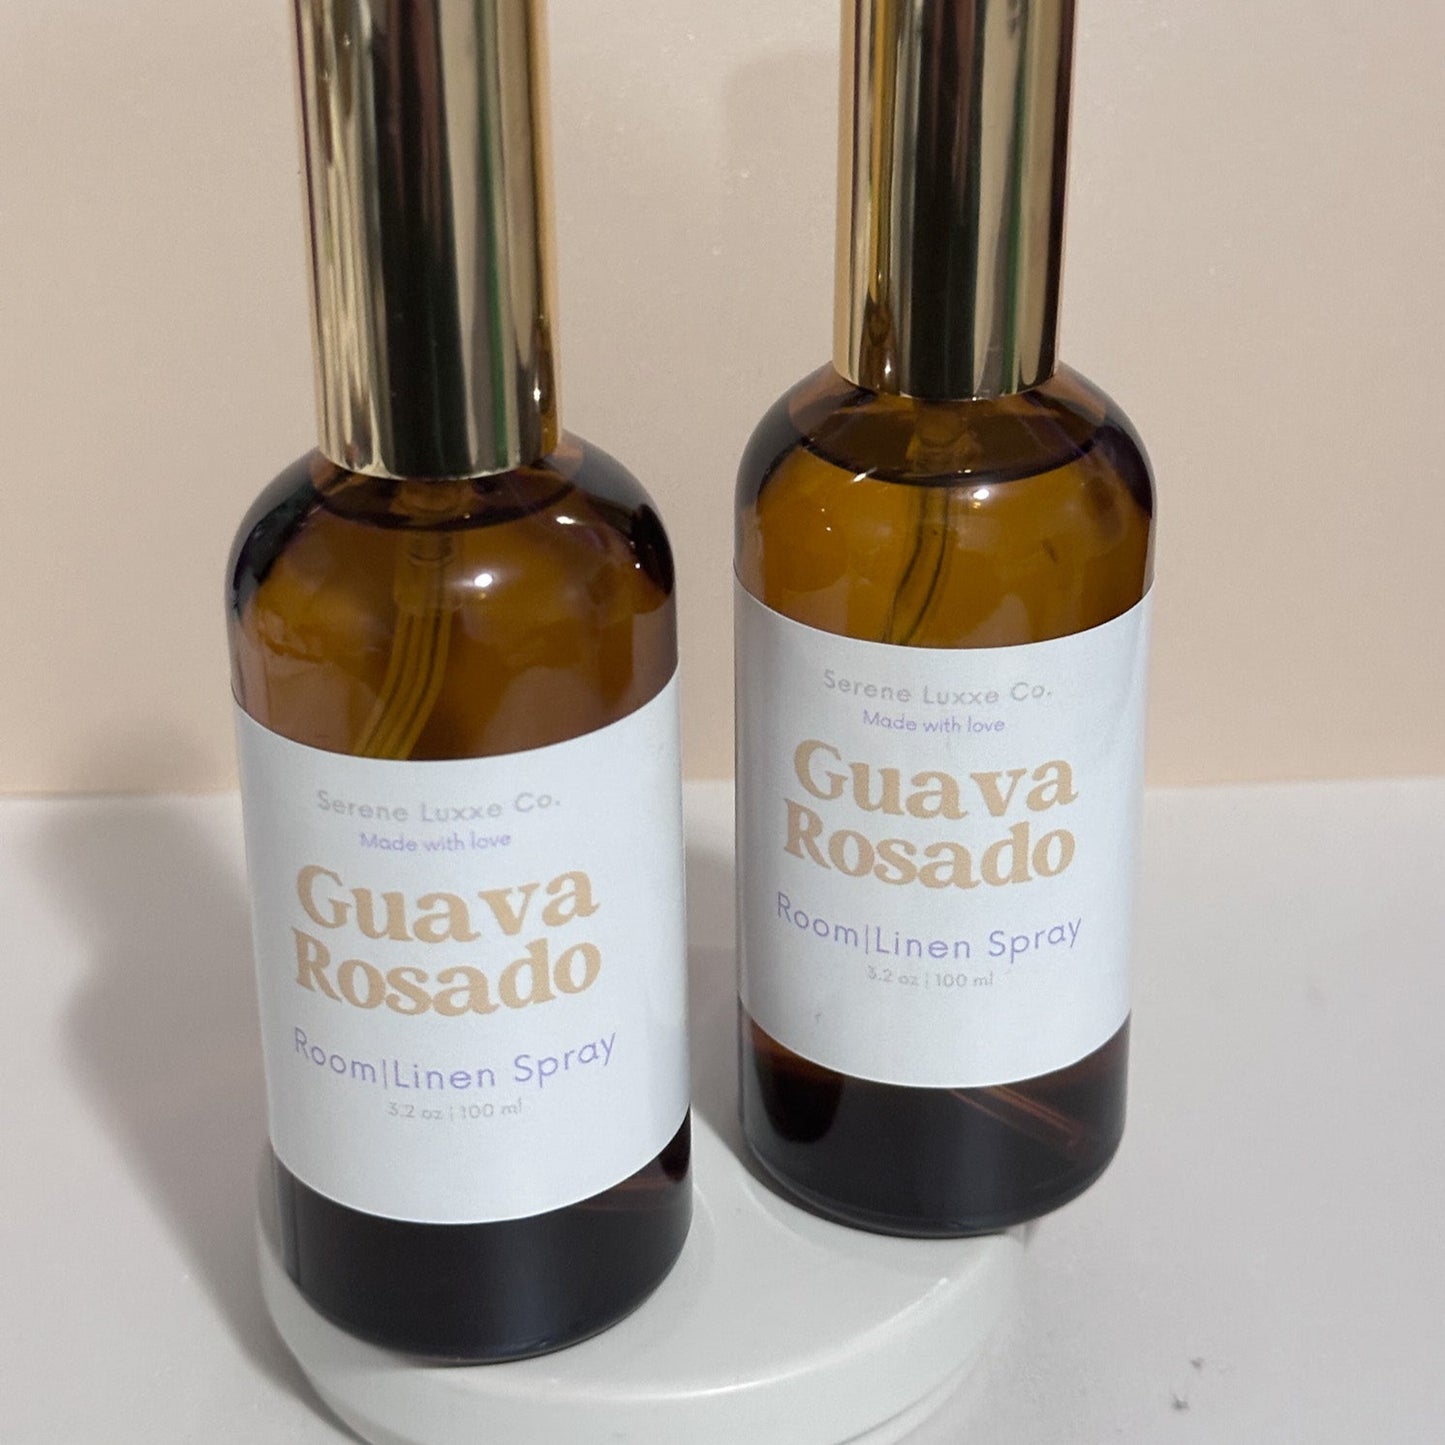 Guava Rosado Room Spray